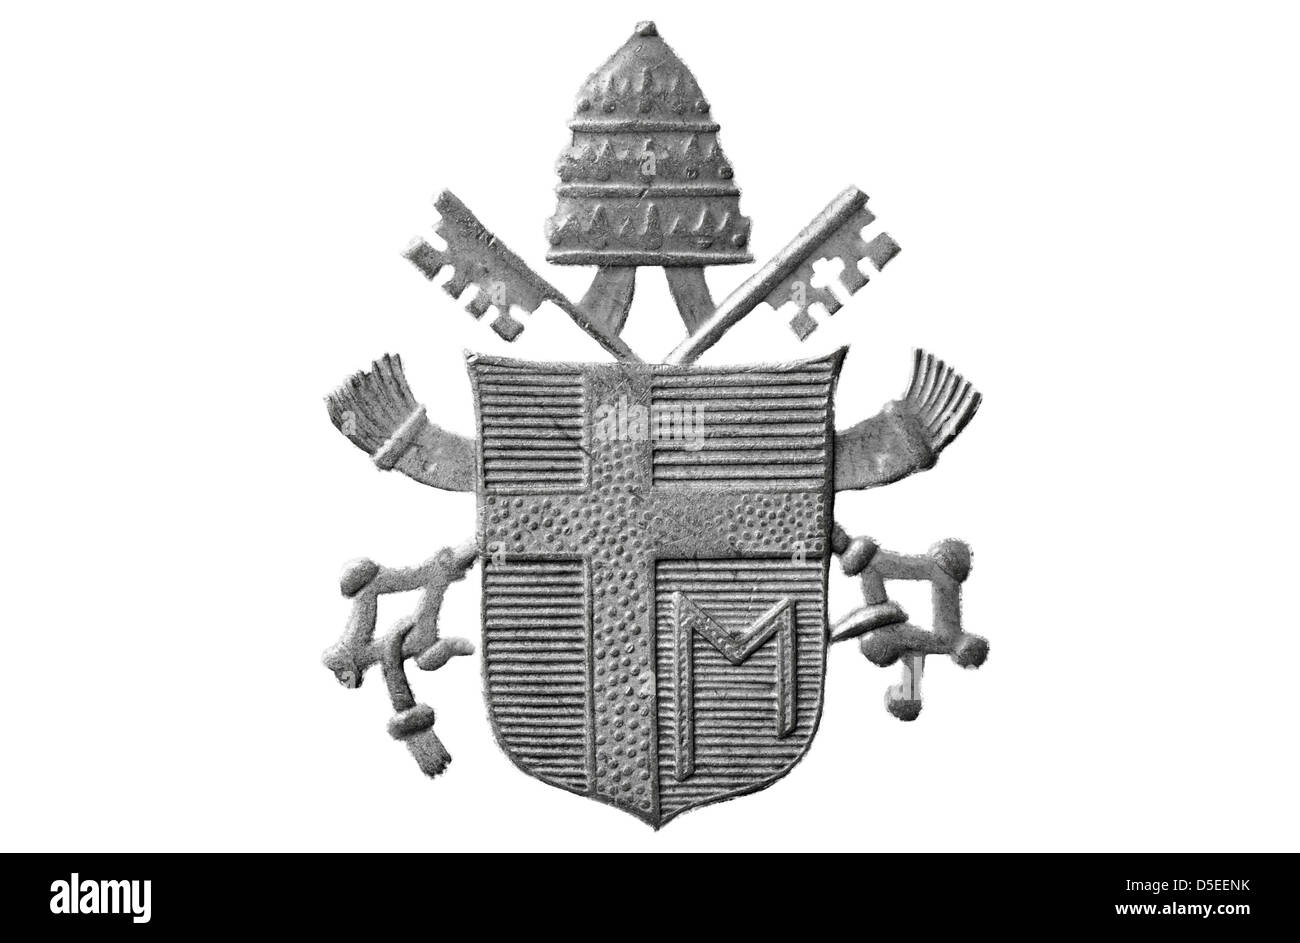 Le Pape Jean Paul II armoiries, médaille du Vatican, 1978 Banque D'Images